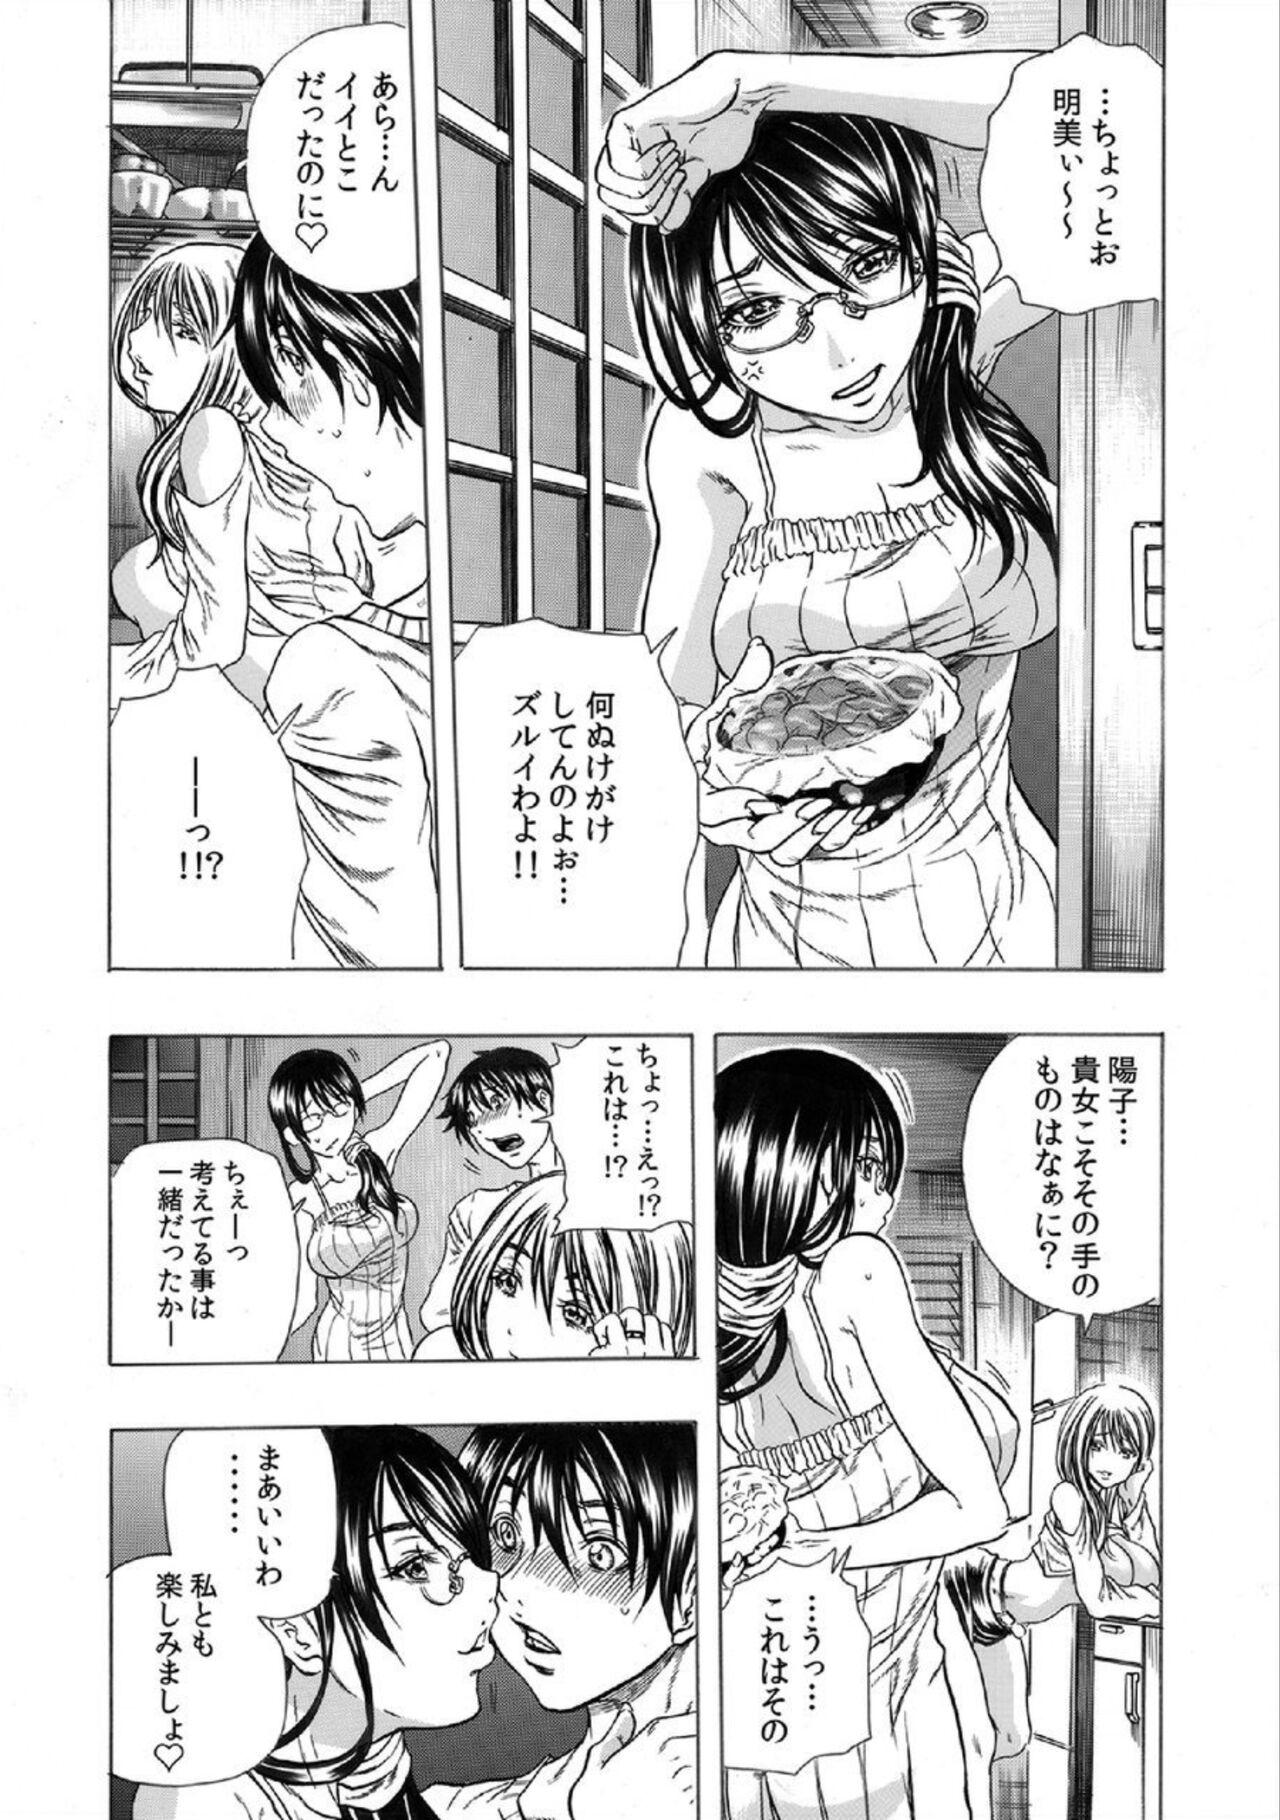 Couples Tonarinookusan O Kachiku Ni Suru 13 No Hōhō 1 Bubblebutt - Page 9